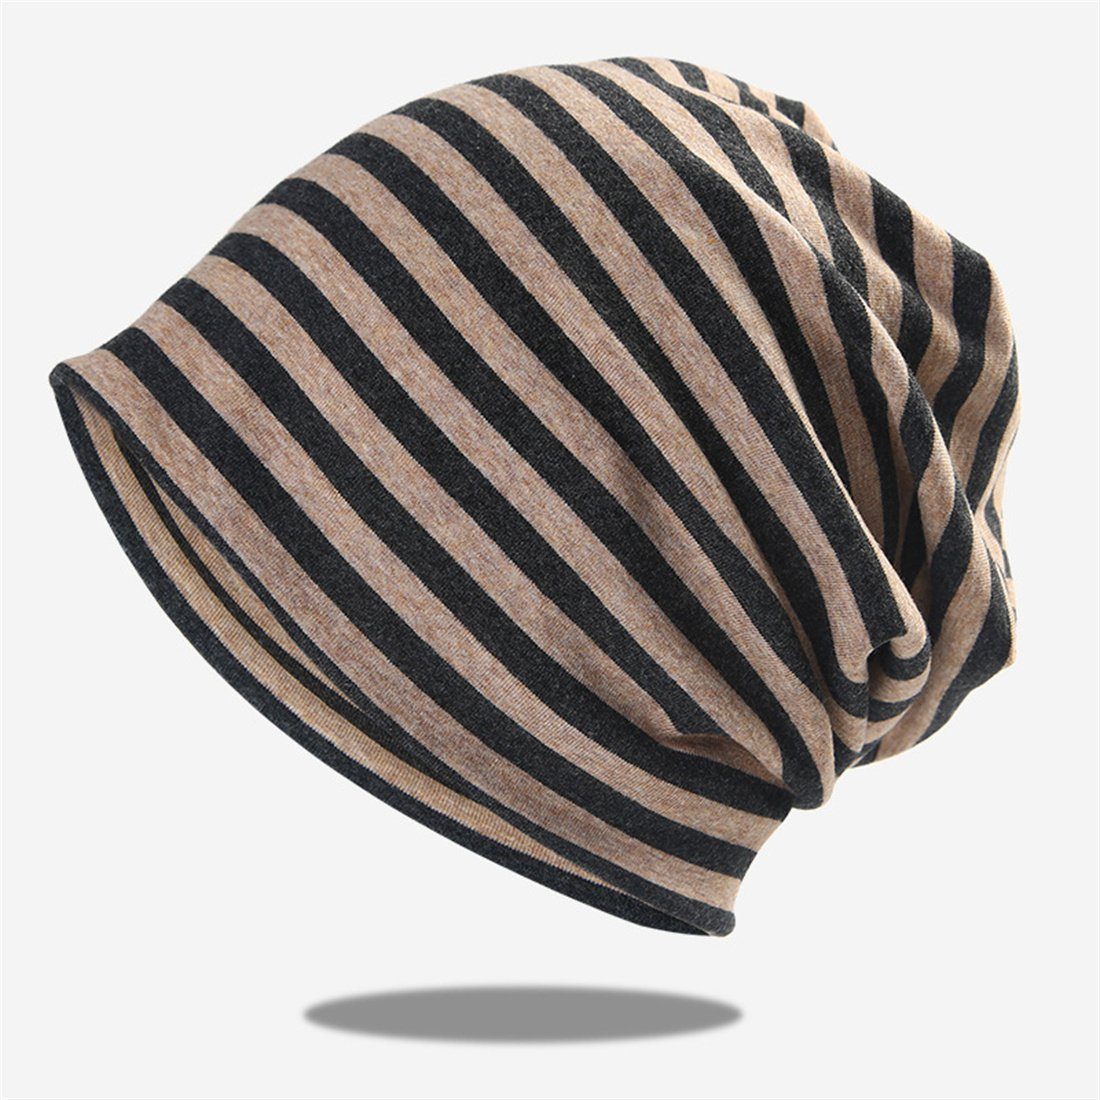 DÖRÖY Strickmütze Gestreifter Pullover Hut, gestrickte Mütze ohne Krempe,Unisex Wrap Hat Grau